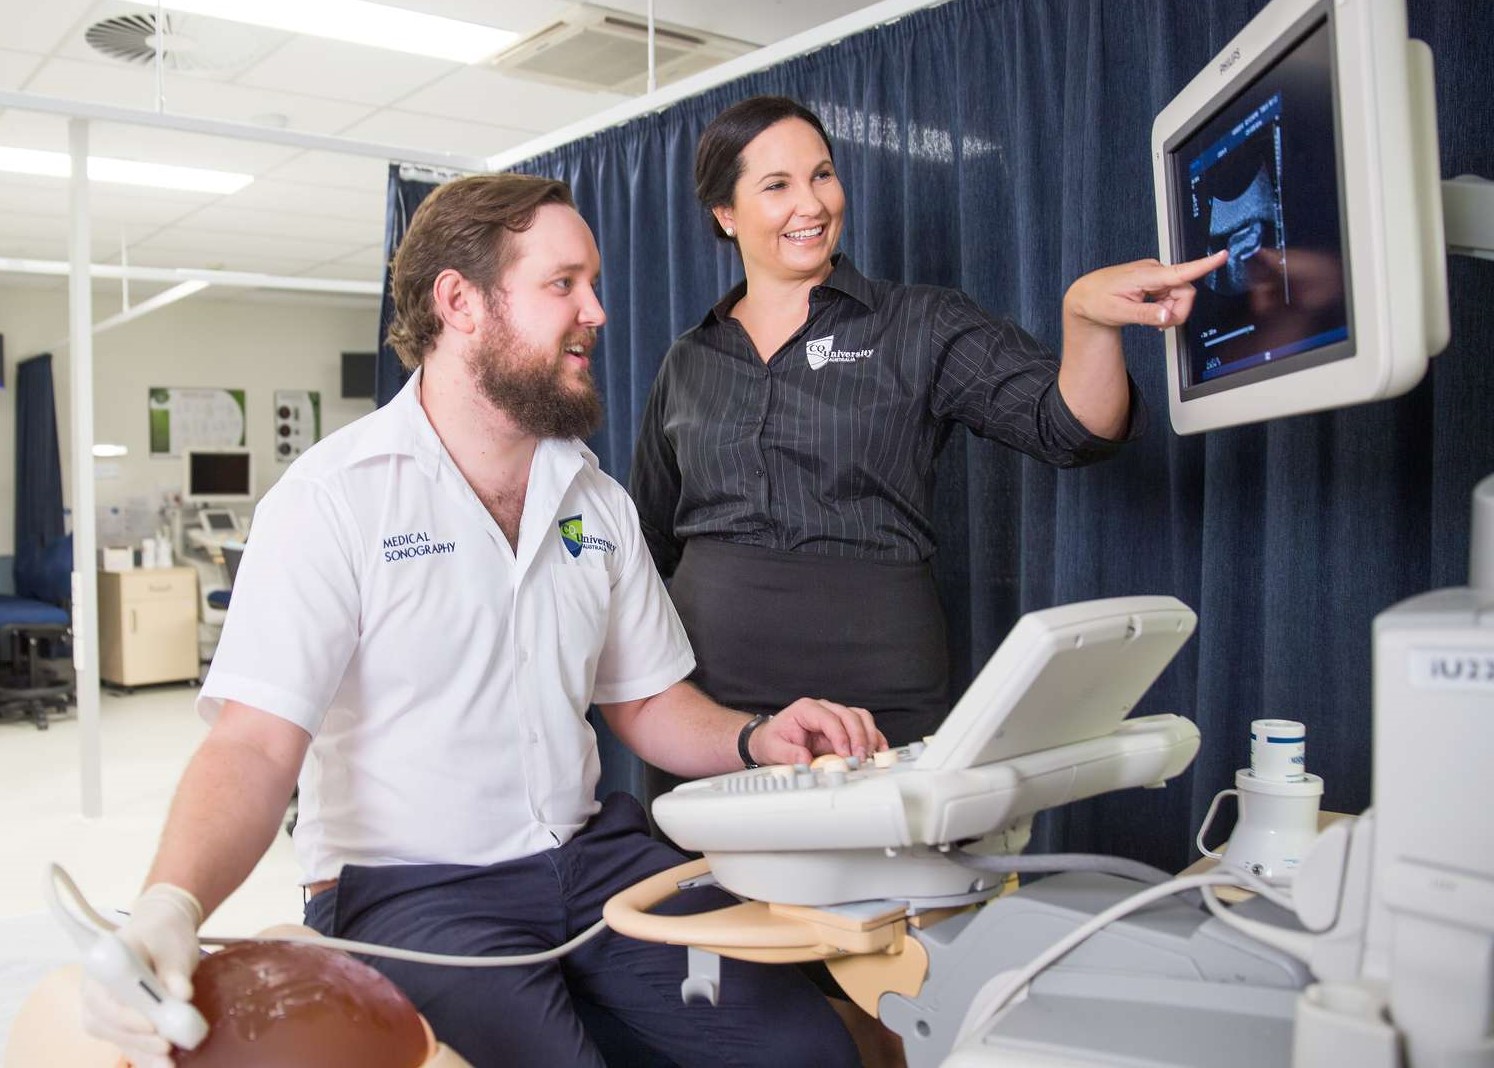 Master of Medical Ultrasound - Central Queensland University